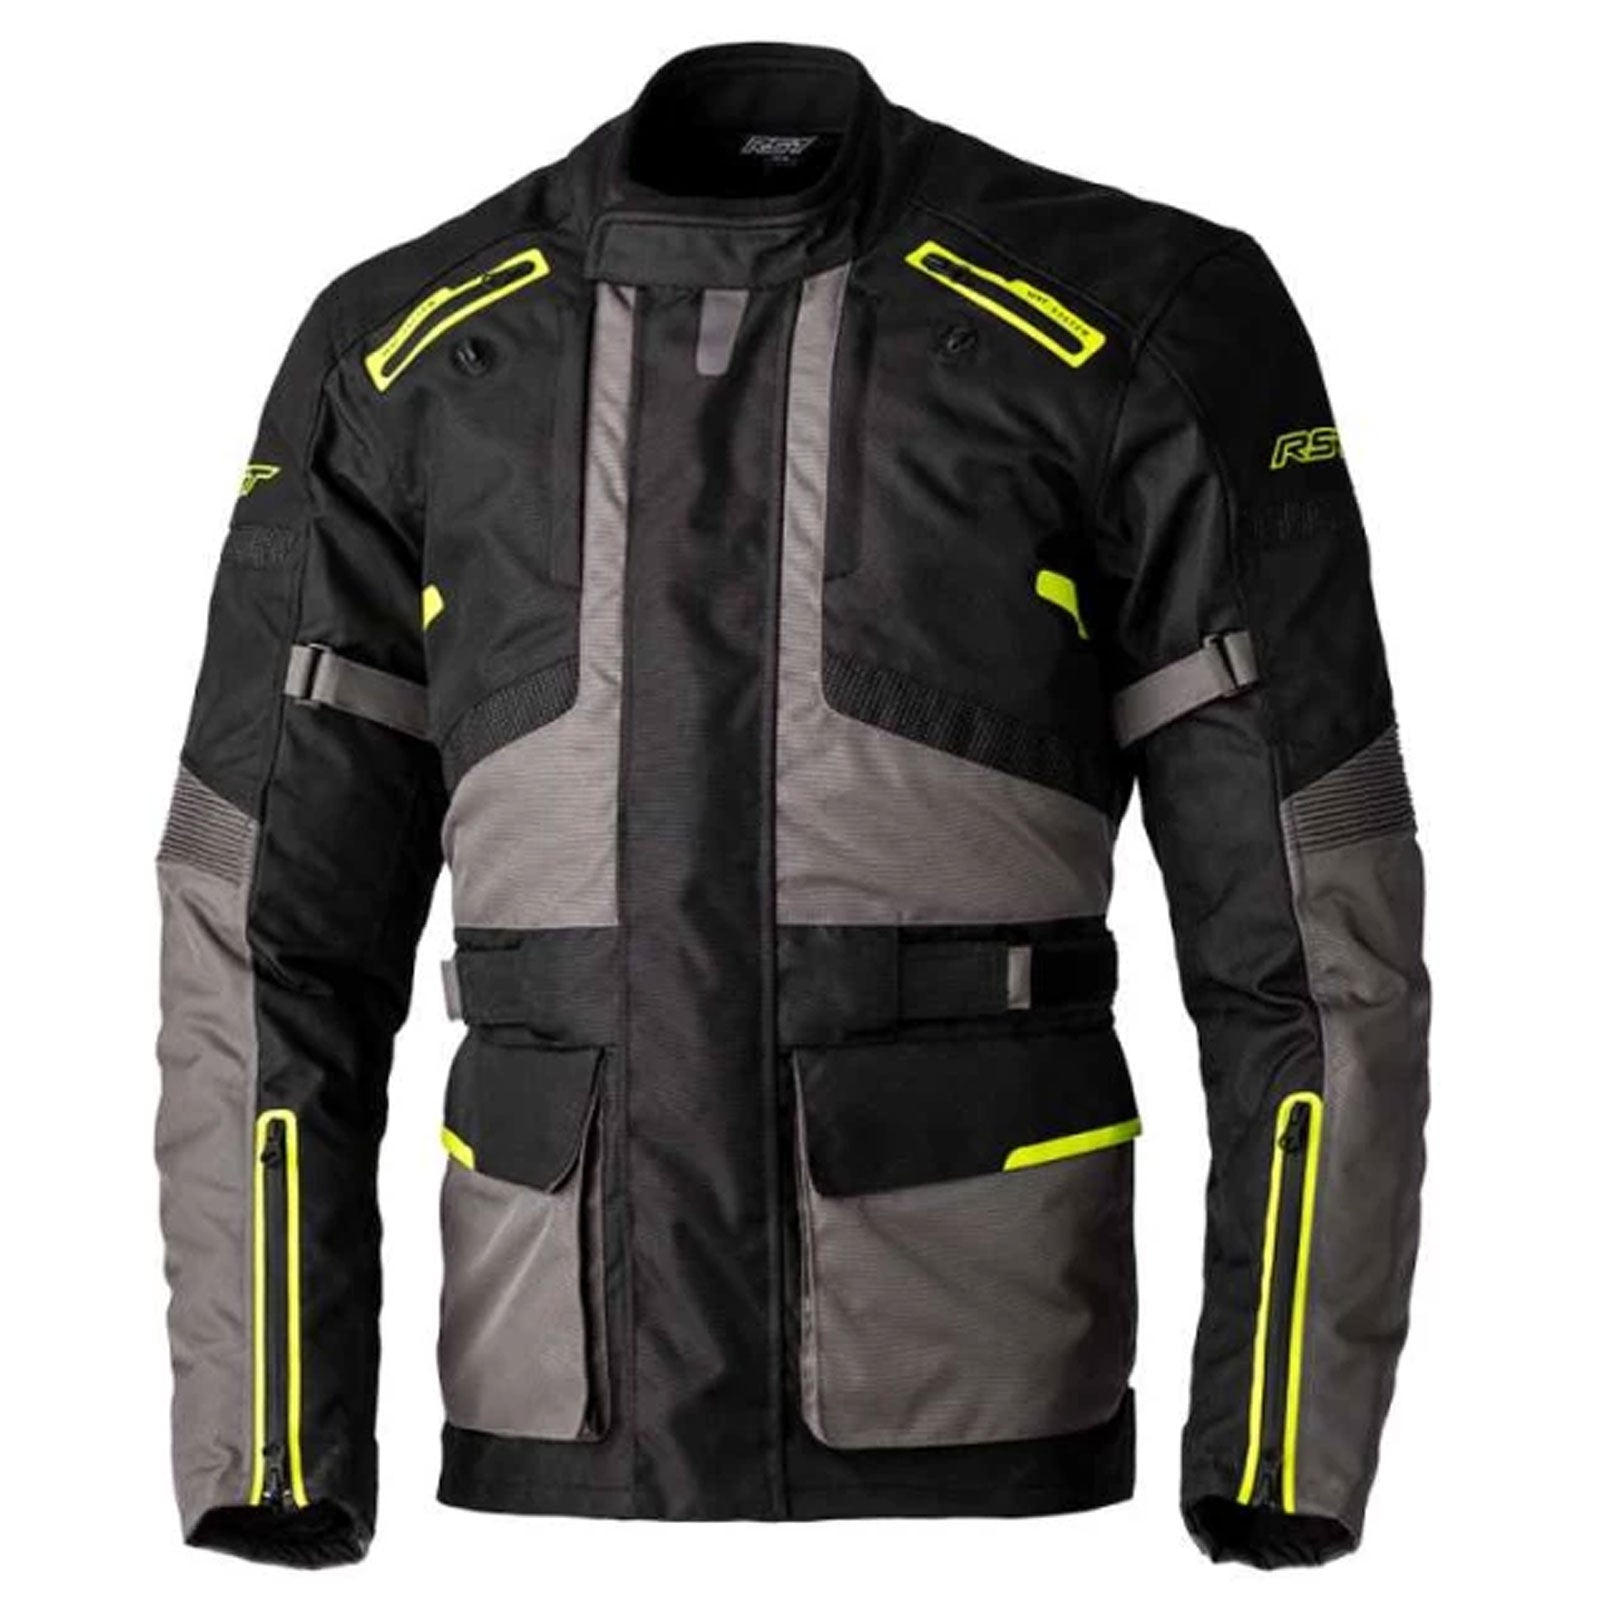 RST Endurance CE Motorcycle Waterproof Jacket Black Grey